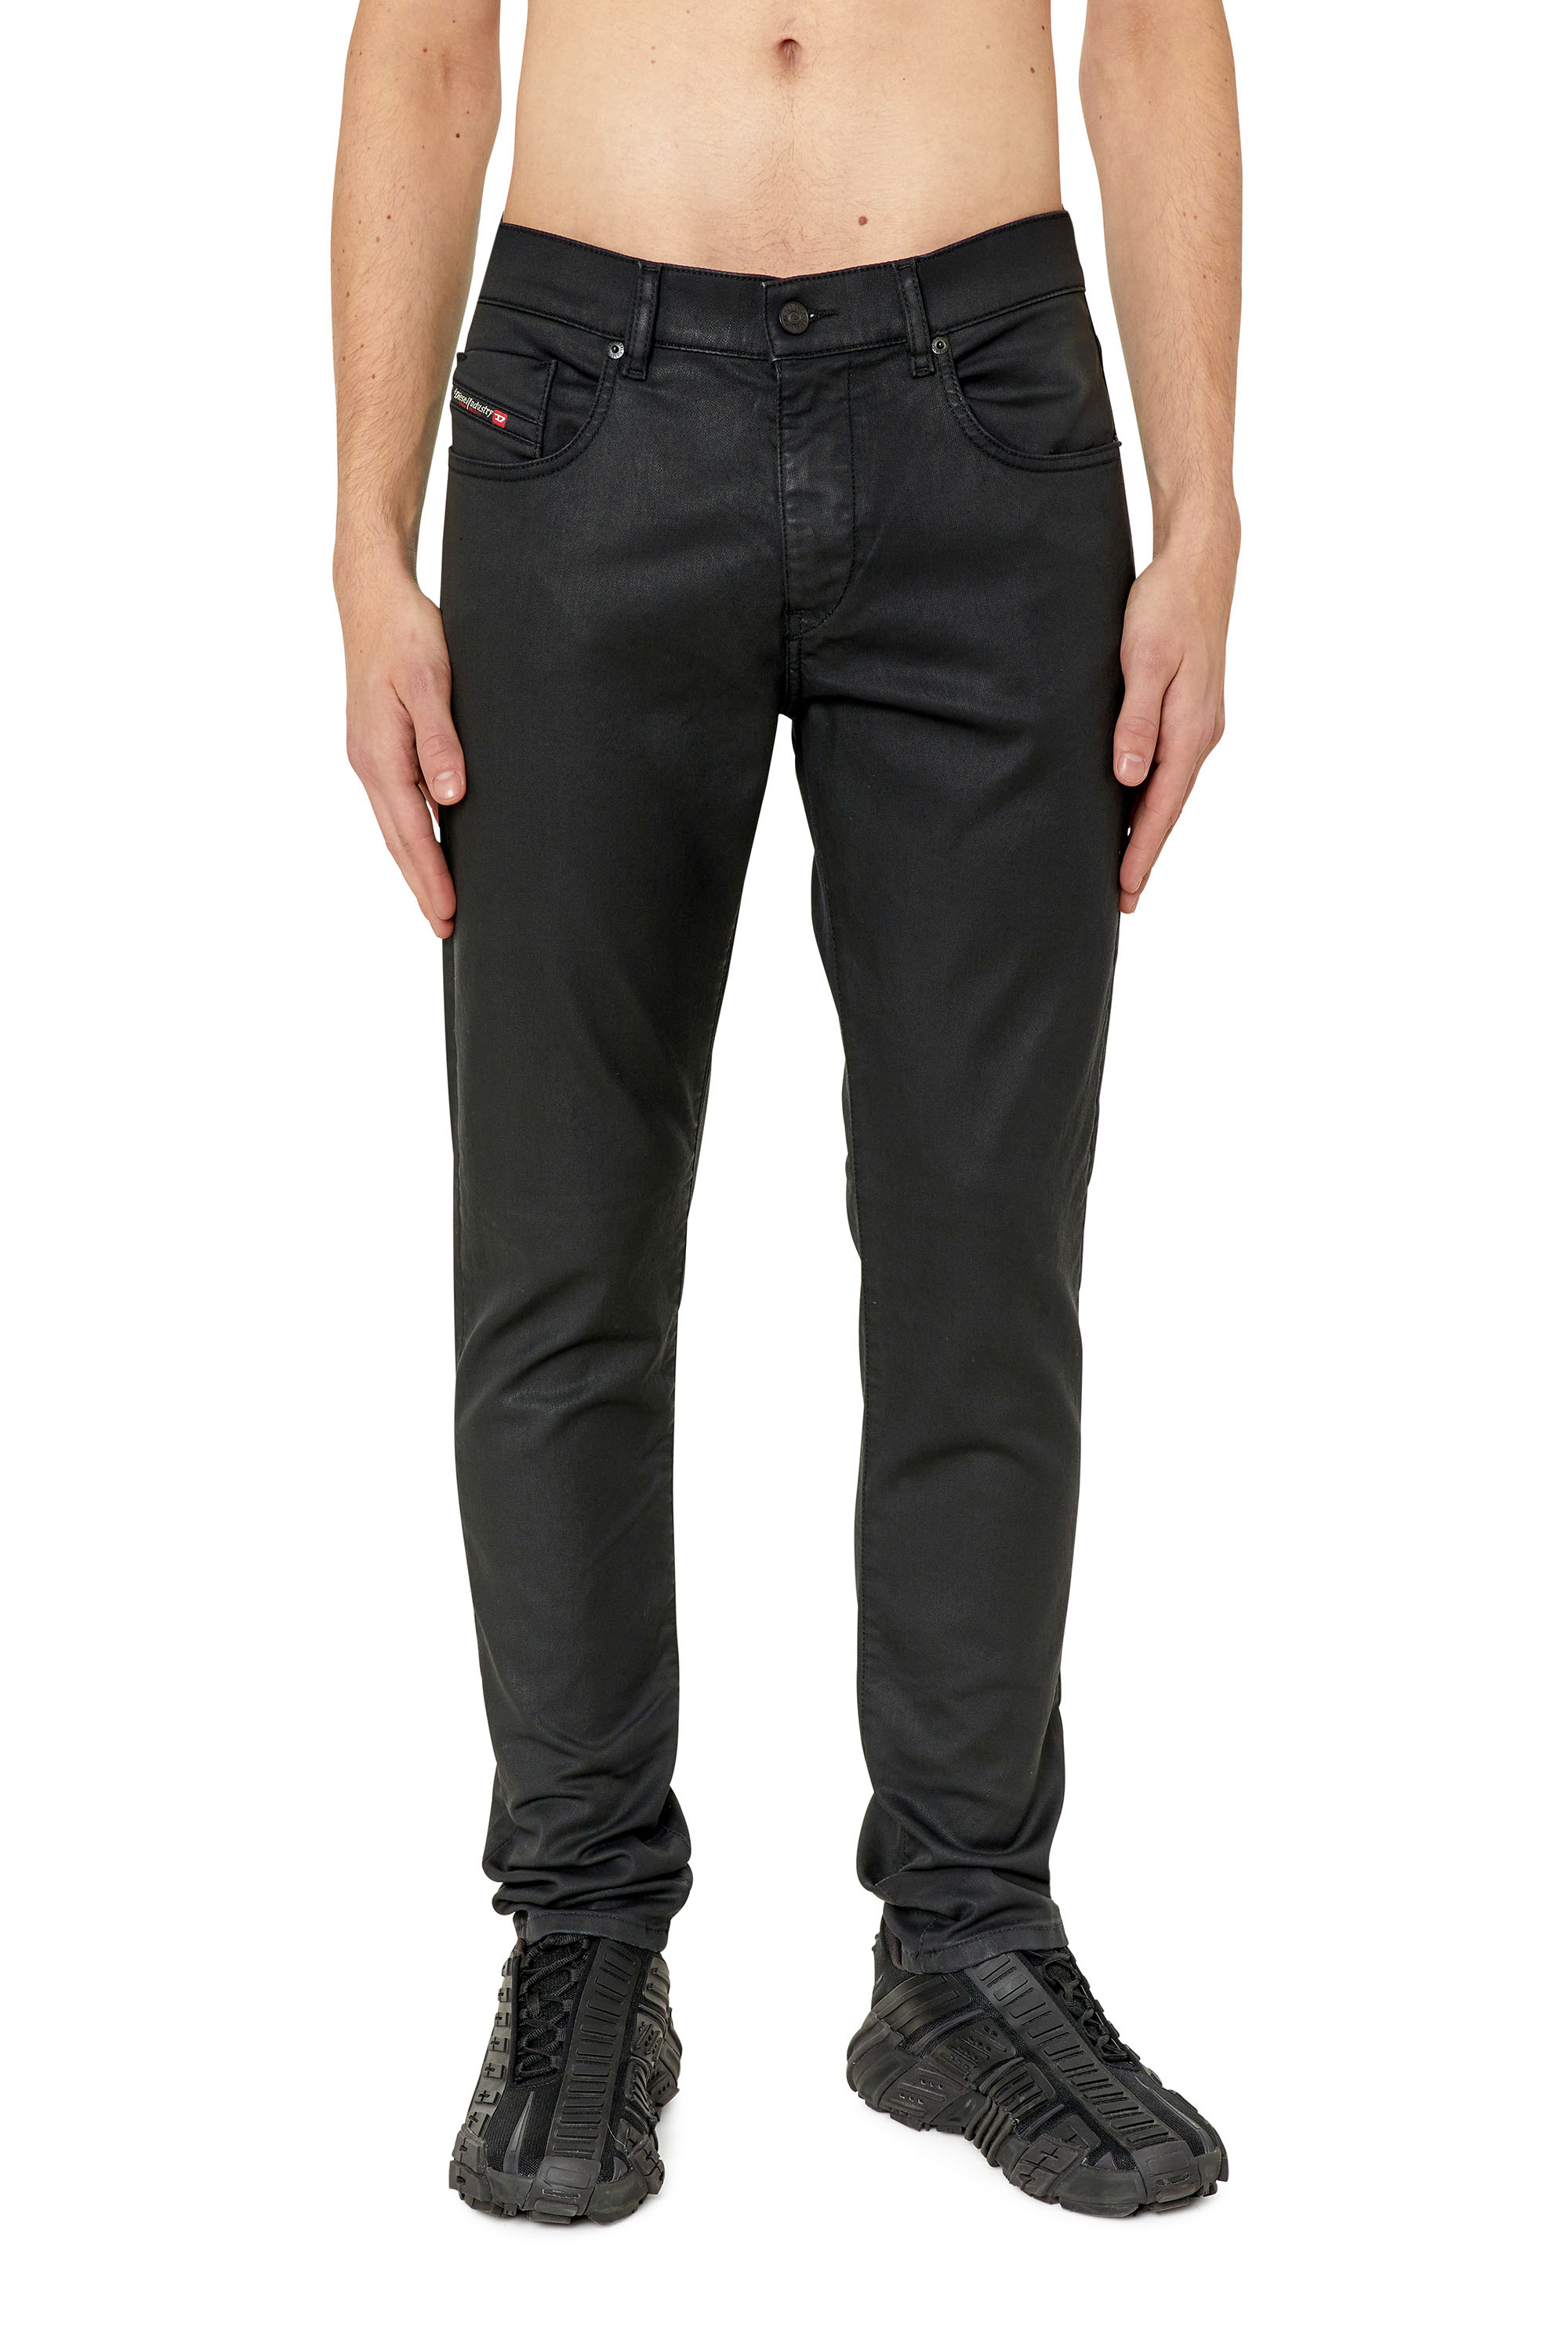 Diesel Slim D-strukt Jogg Jeans In Black